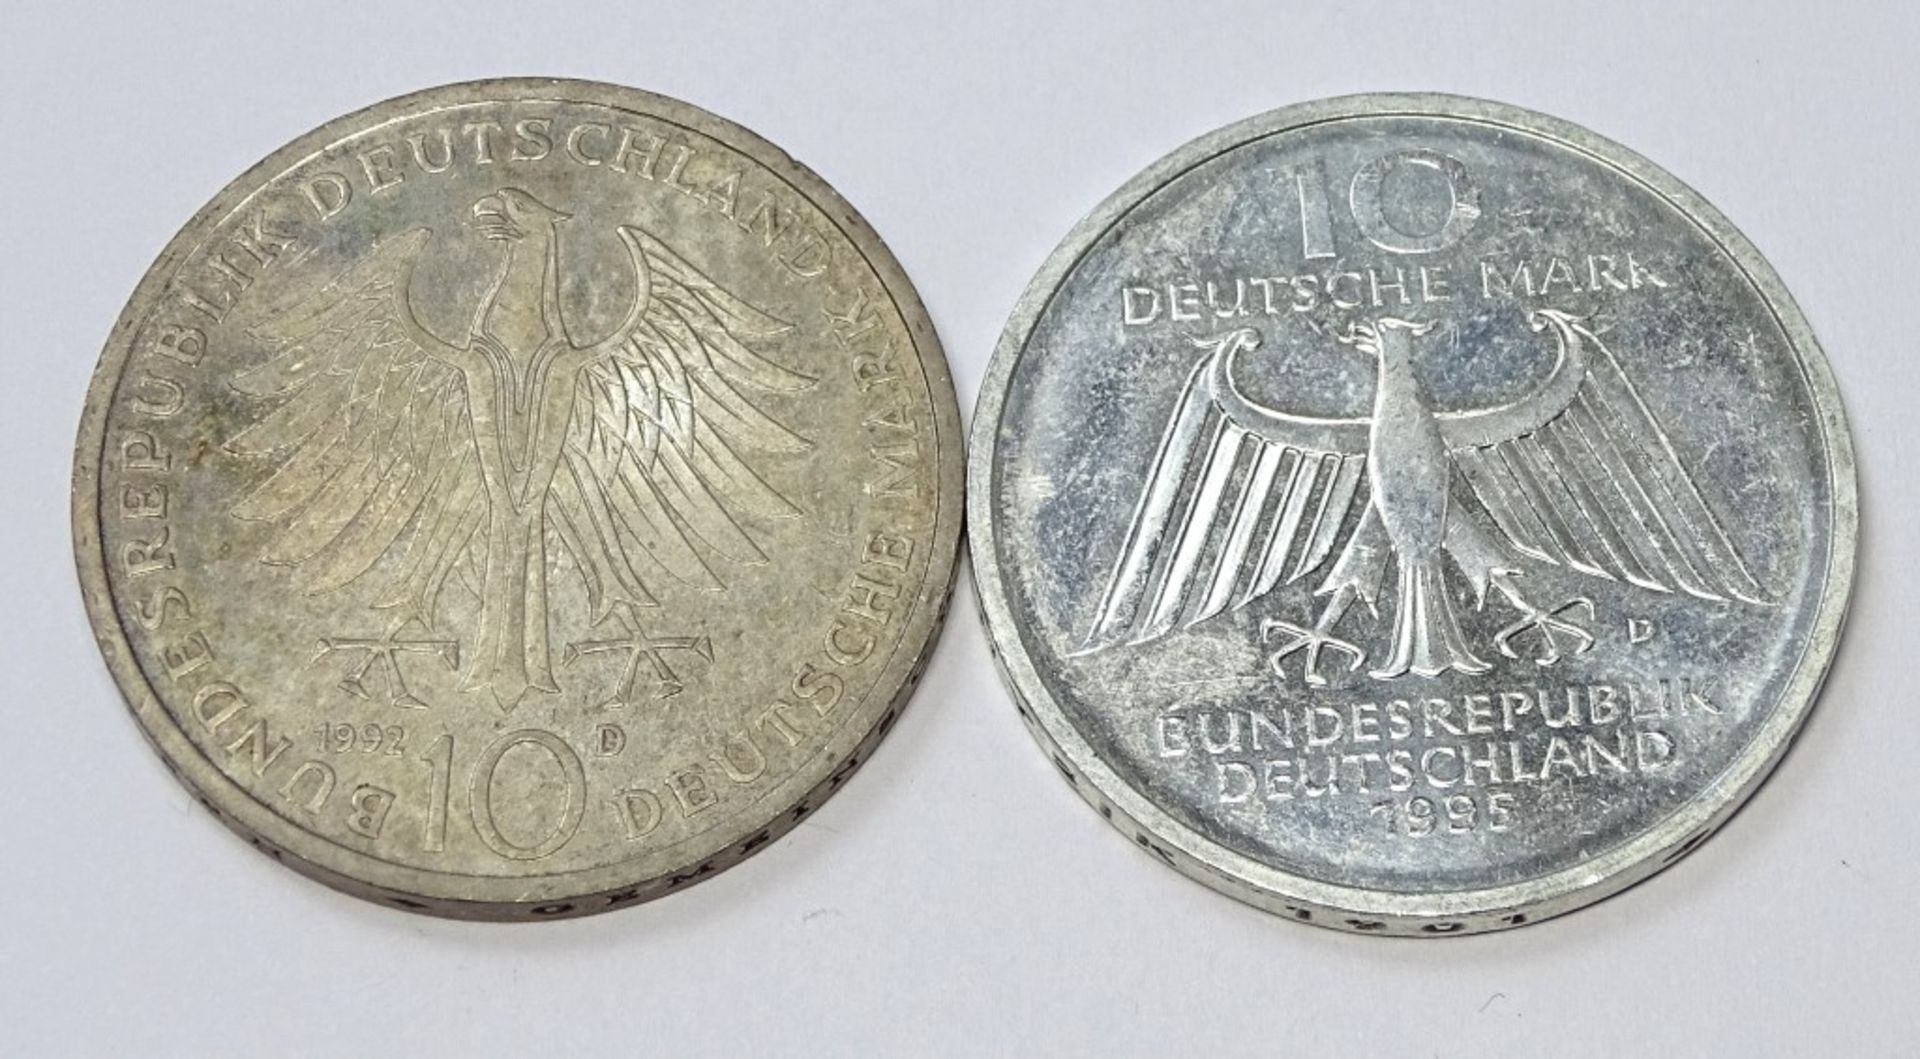 2x 10 DM Sondermünzen, 1992 und 199